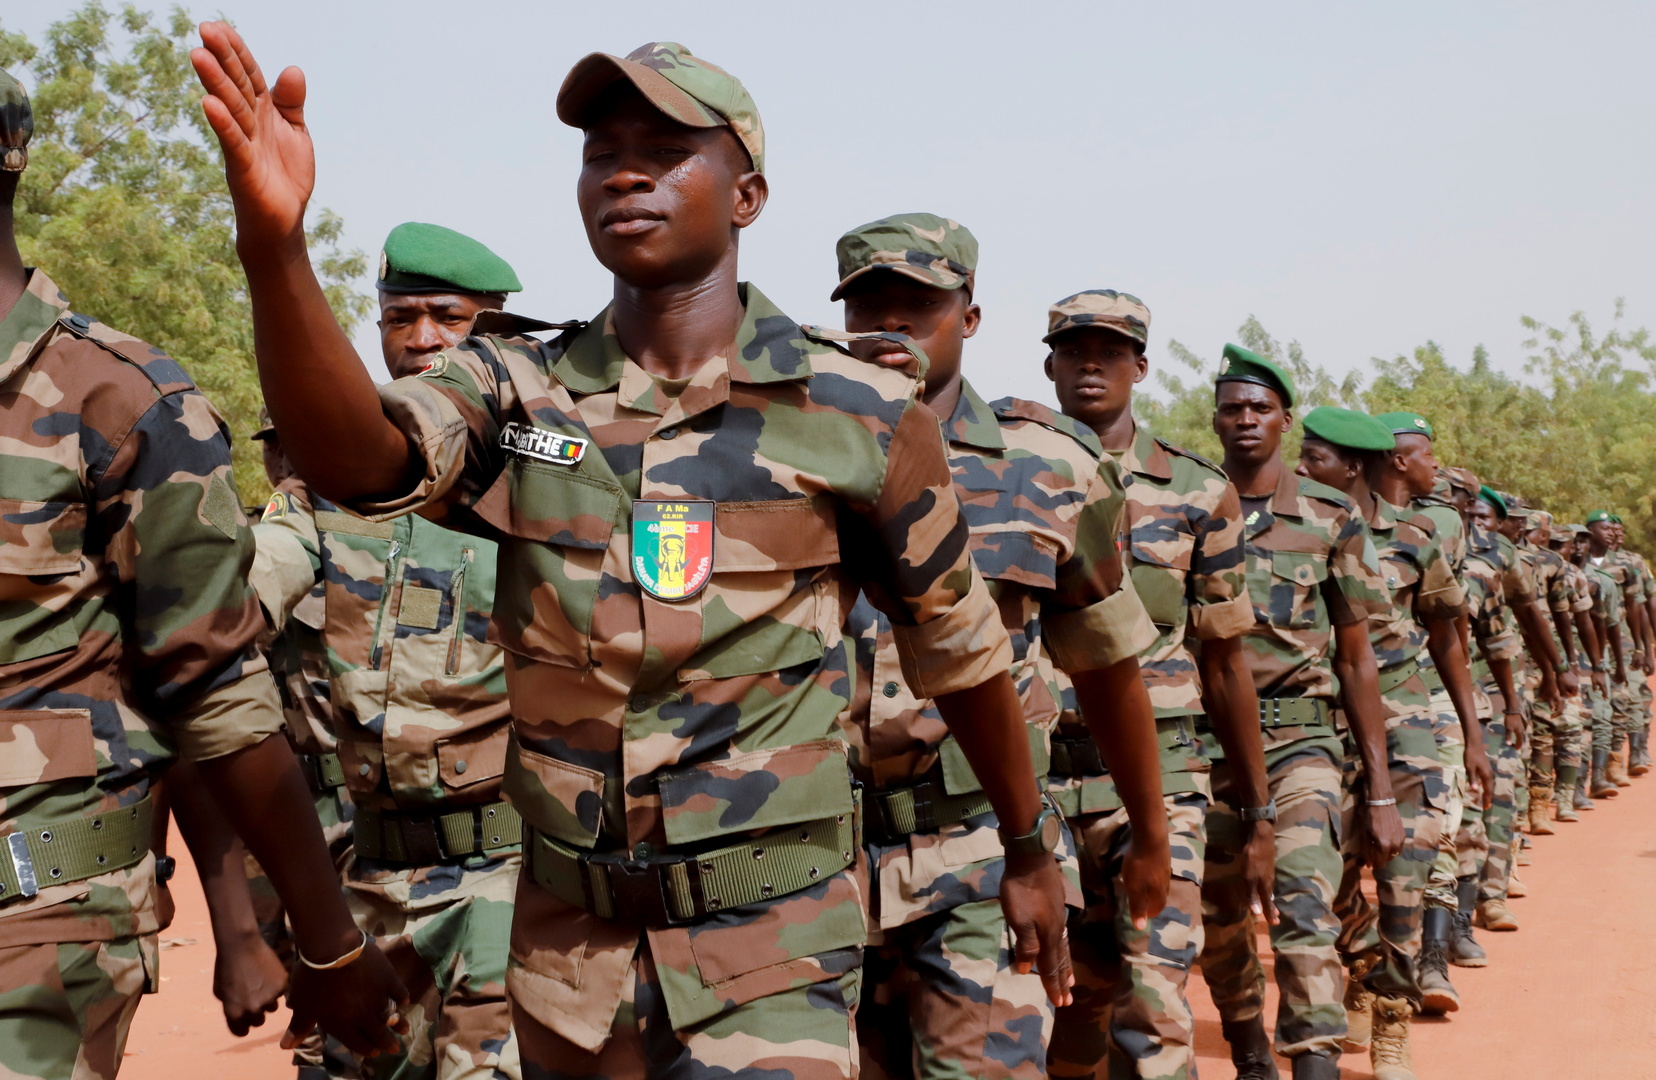 مجلس الأمن الدولي يدعو للإفراج الفوري عن المسؤولين المعتقلين في مالي